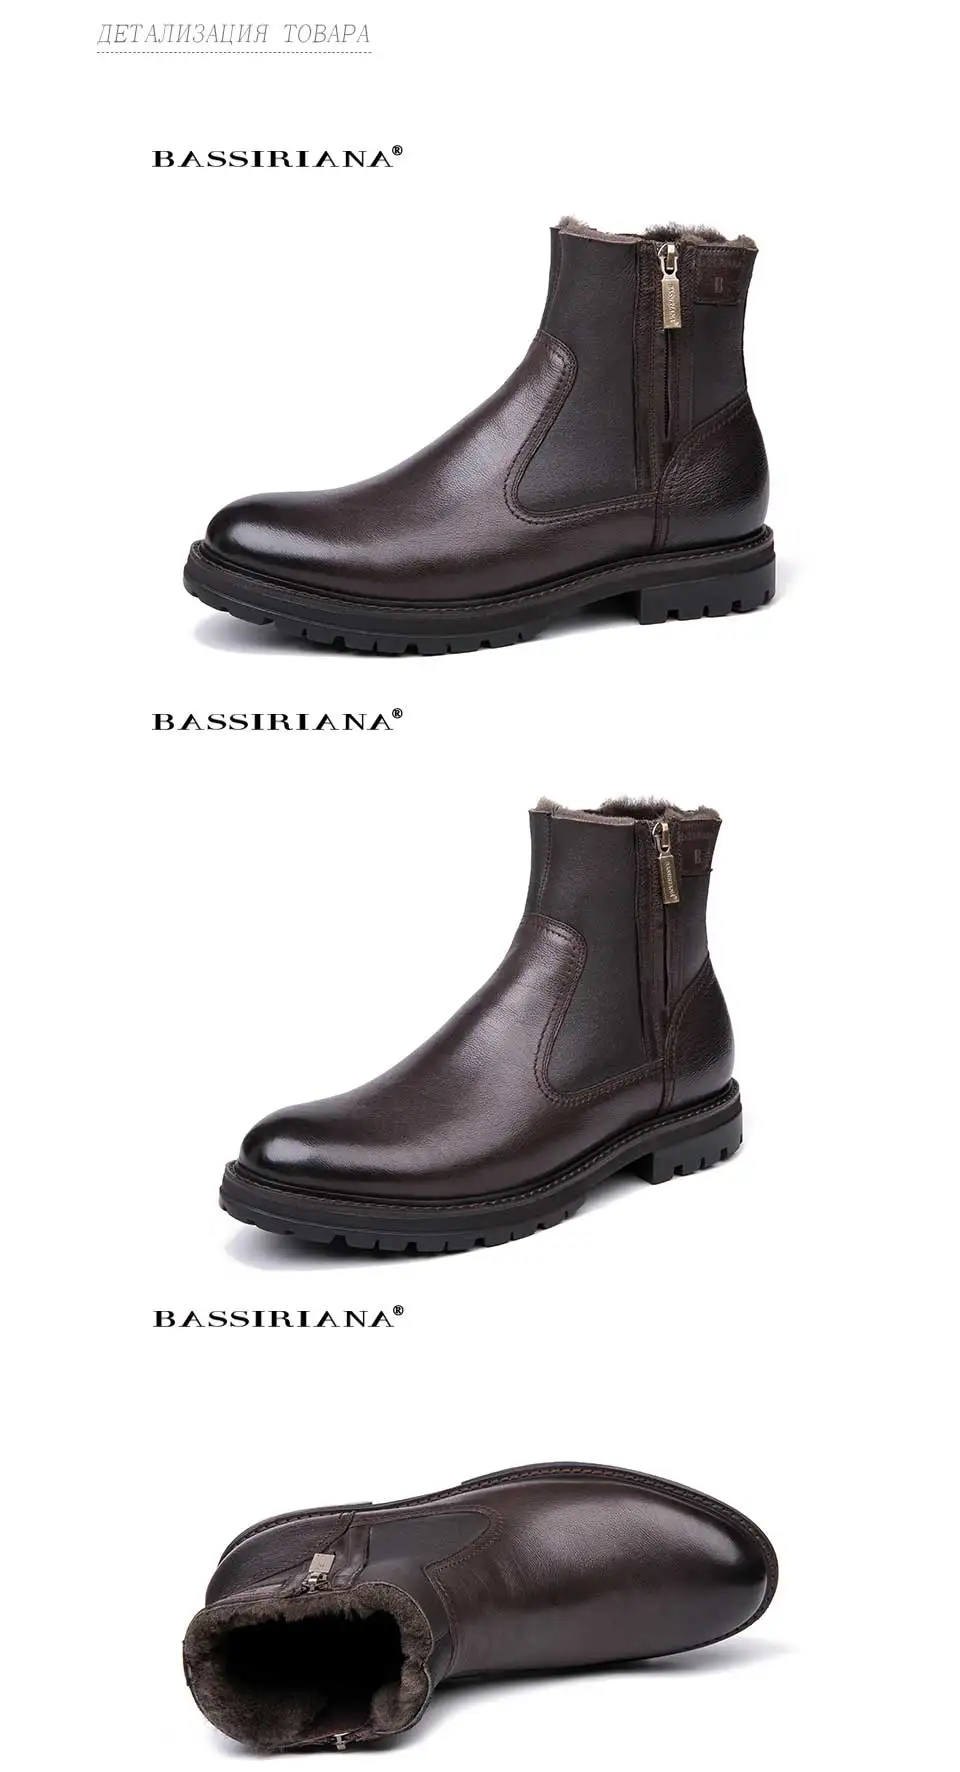 BASSIRIANA/мужские зимние ботинки, натуральная кожа подкладка овечьей шерсти, большой российские размеры 39-45 черный и коричневый